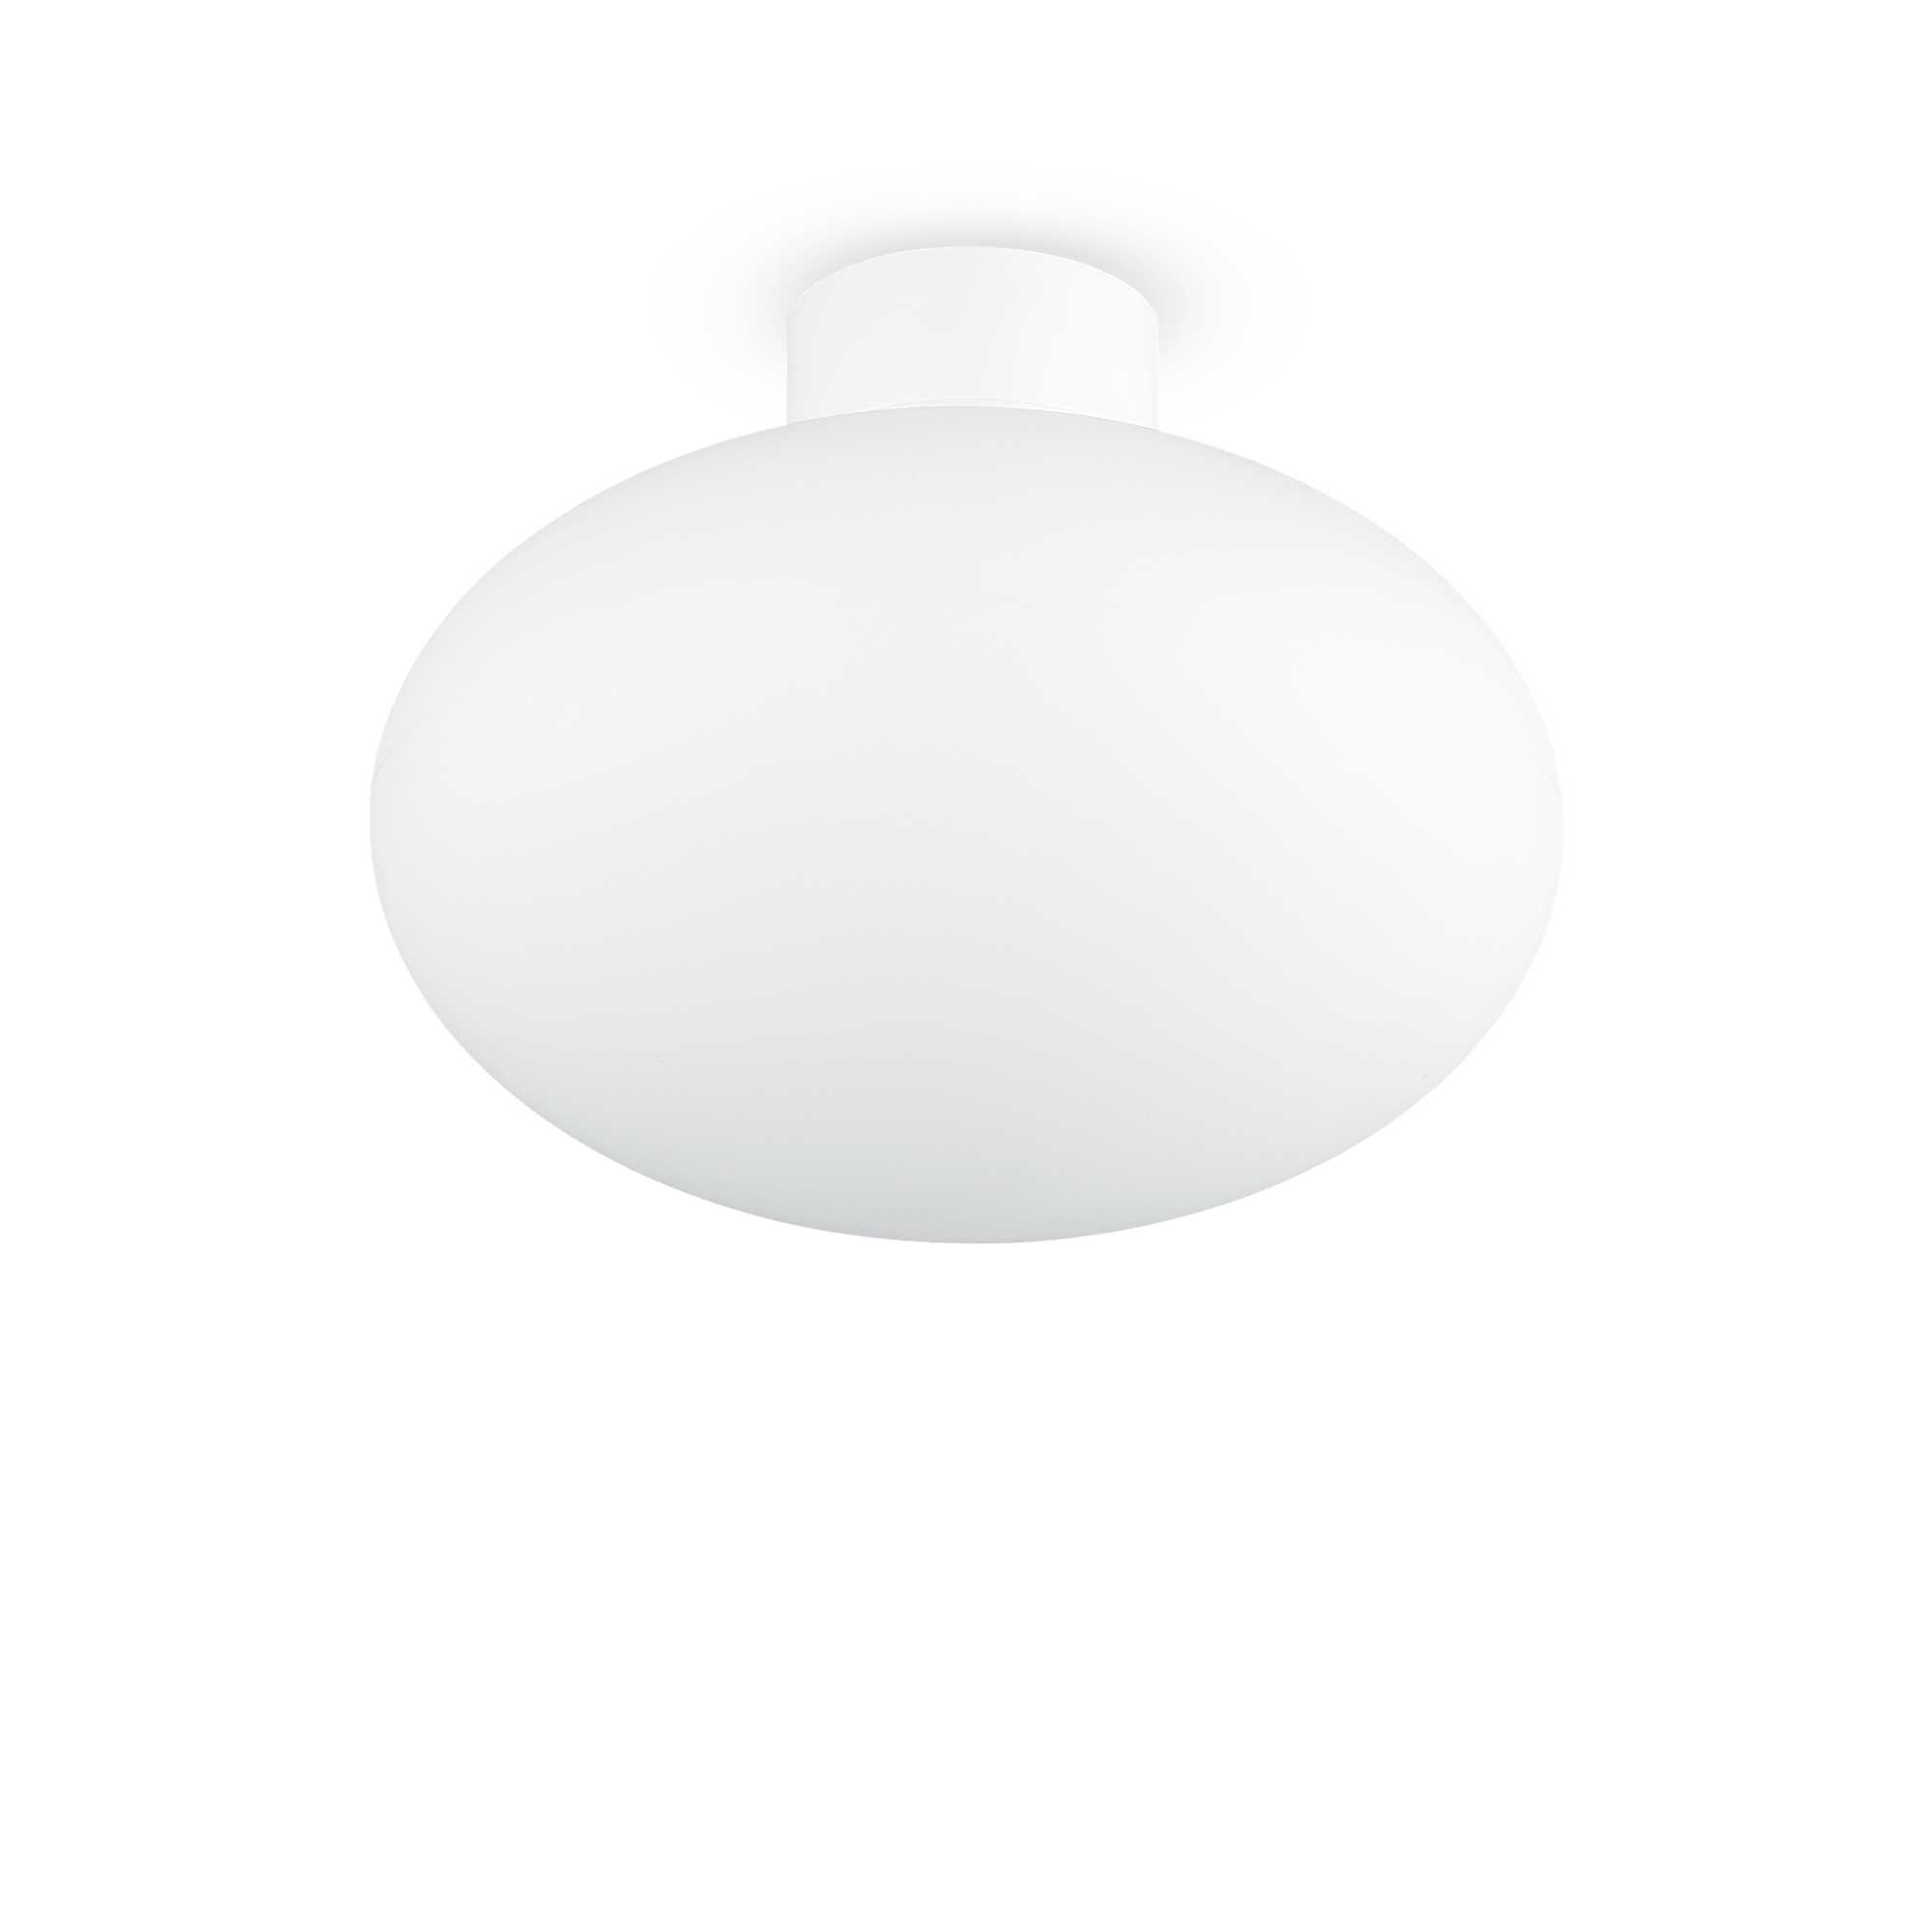 AD hotelska oprema Vanjska stropna lampa Clio mpl1- Bijele boje slika proizvoda